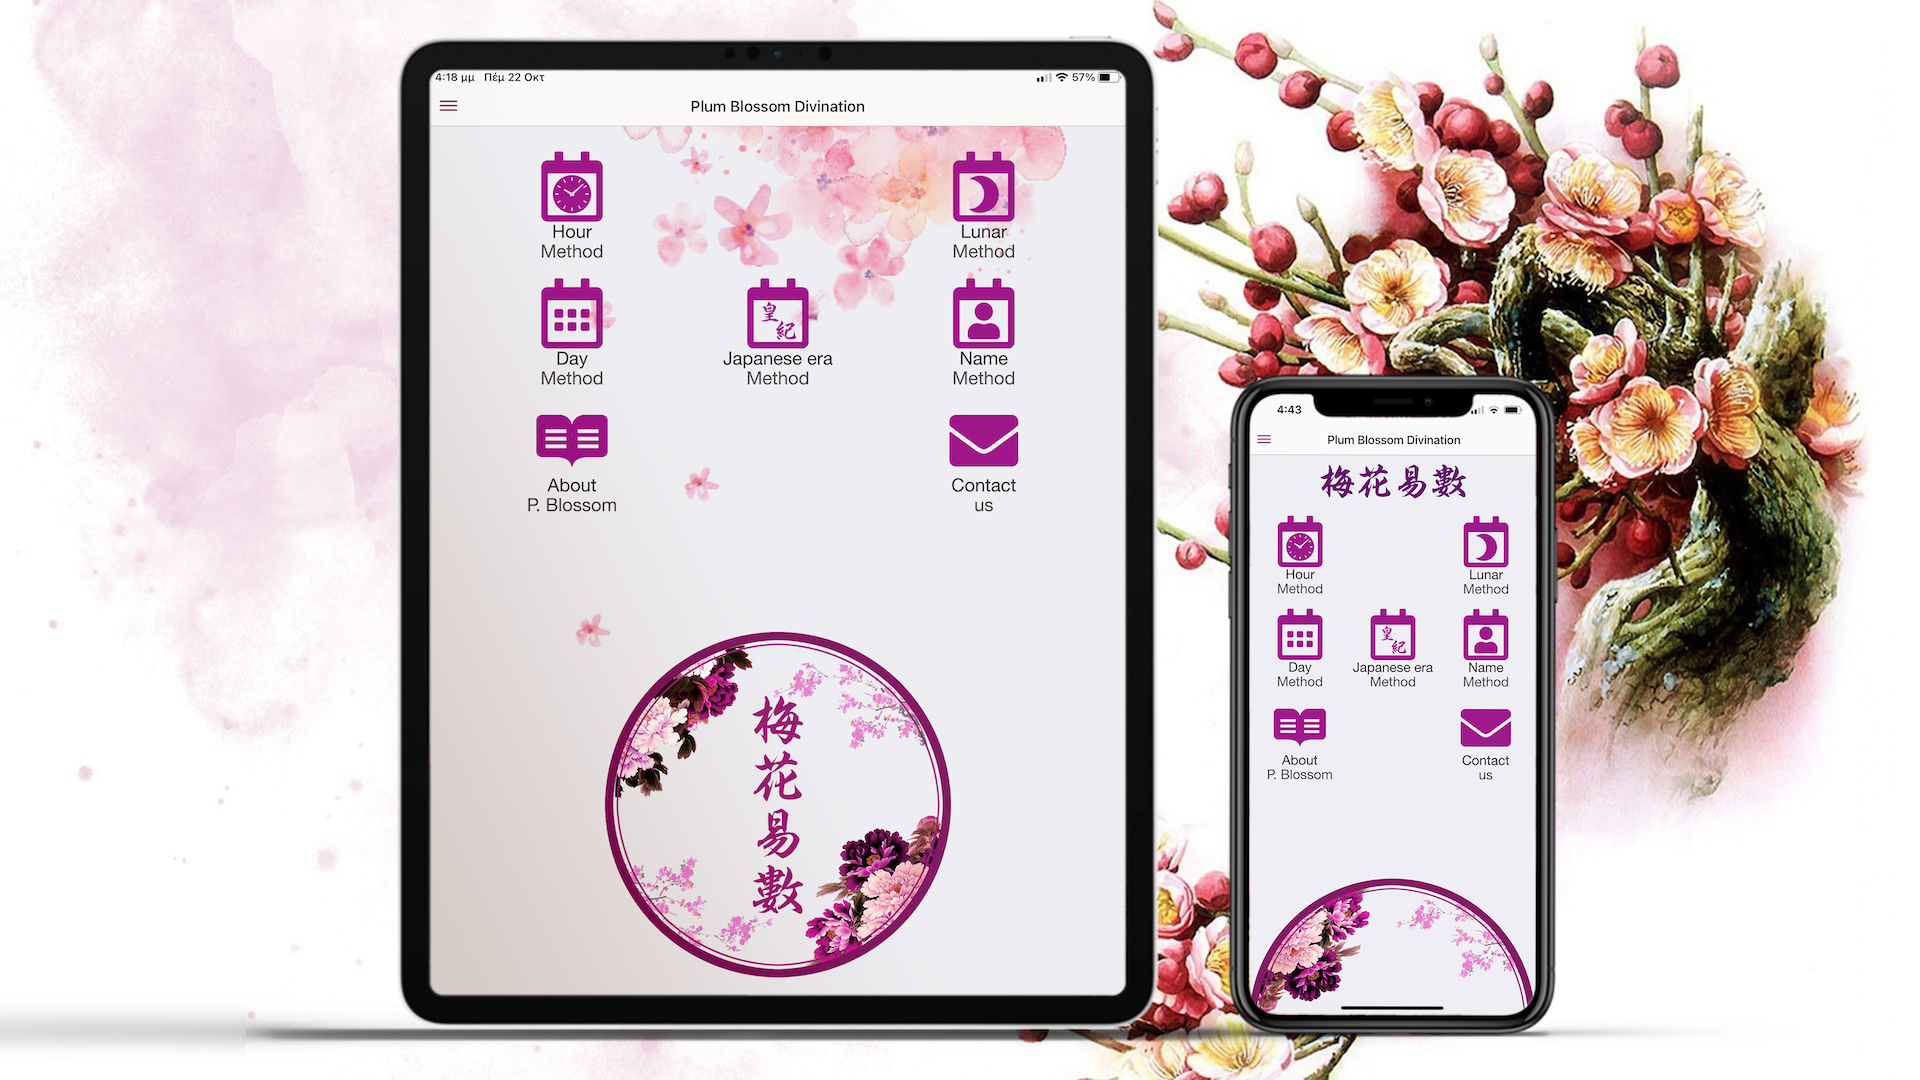 Plum Blossom App for iOS Devices